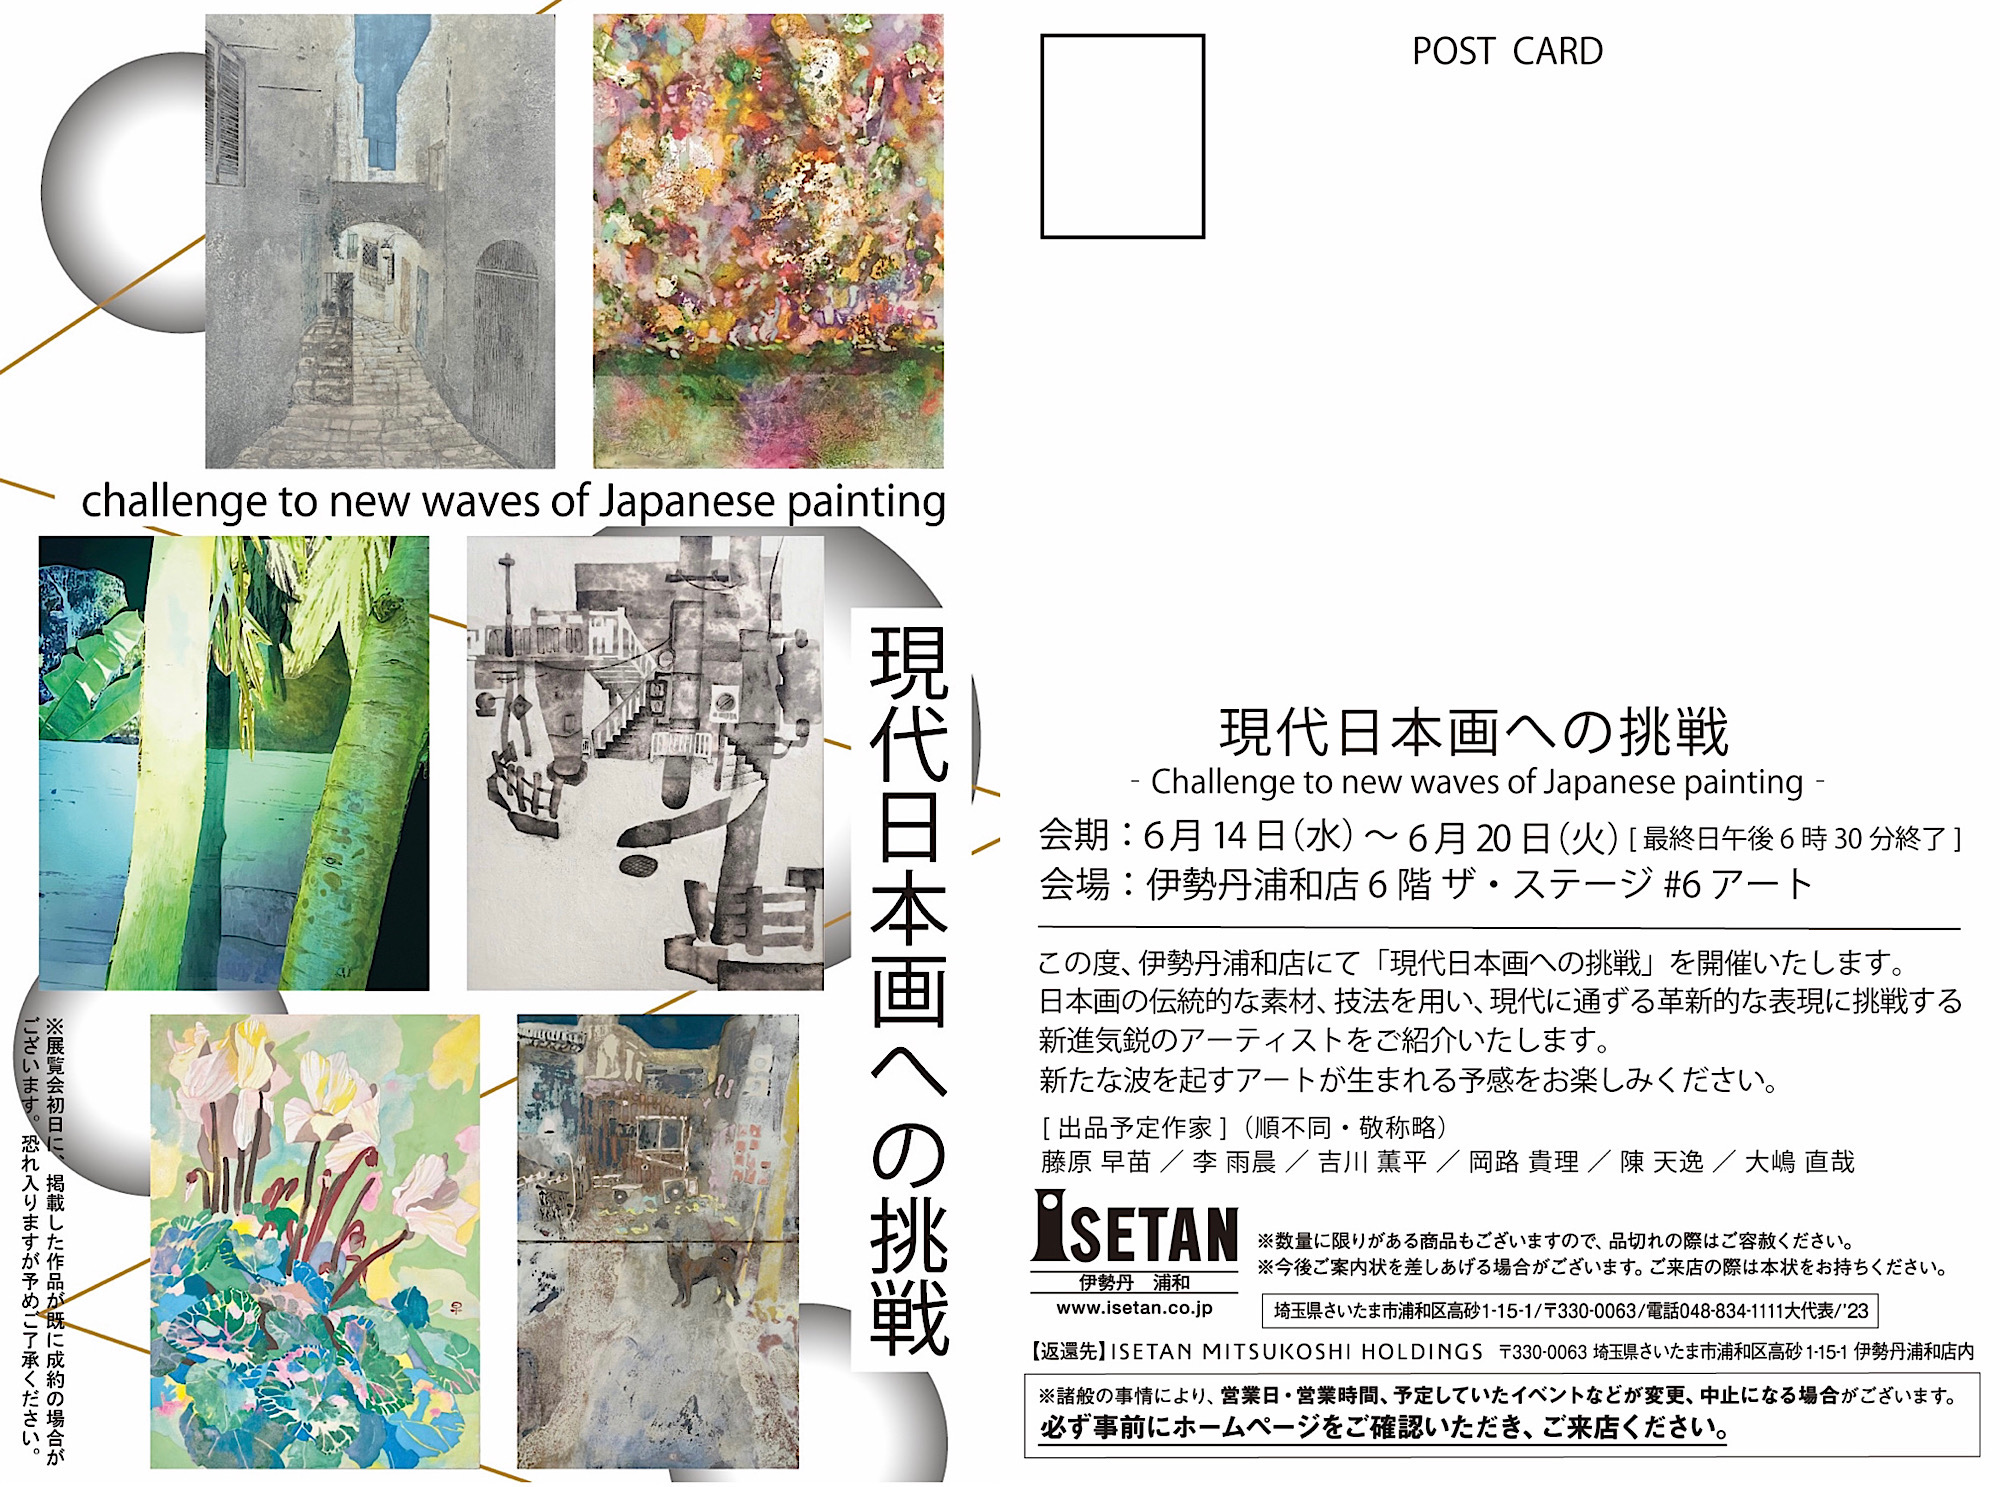 「現代日本画への挑戦」(2023年6月14日(水)-6月20日(火))伊勢丹浦和店6階 ザ・ステージ #6アートにて開催！